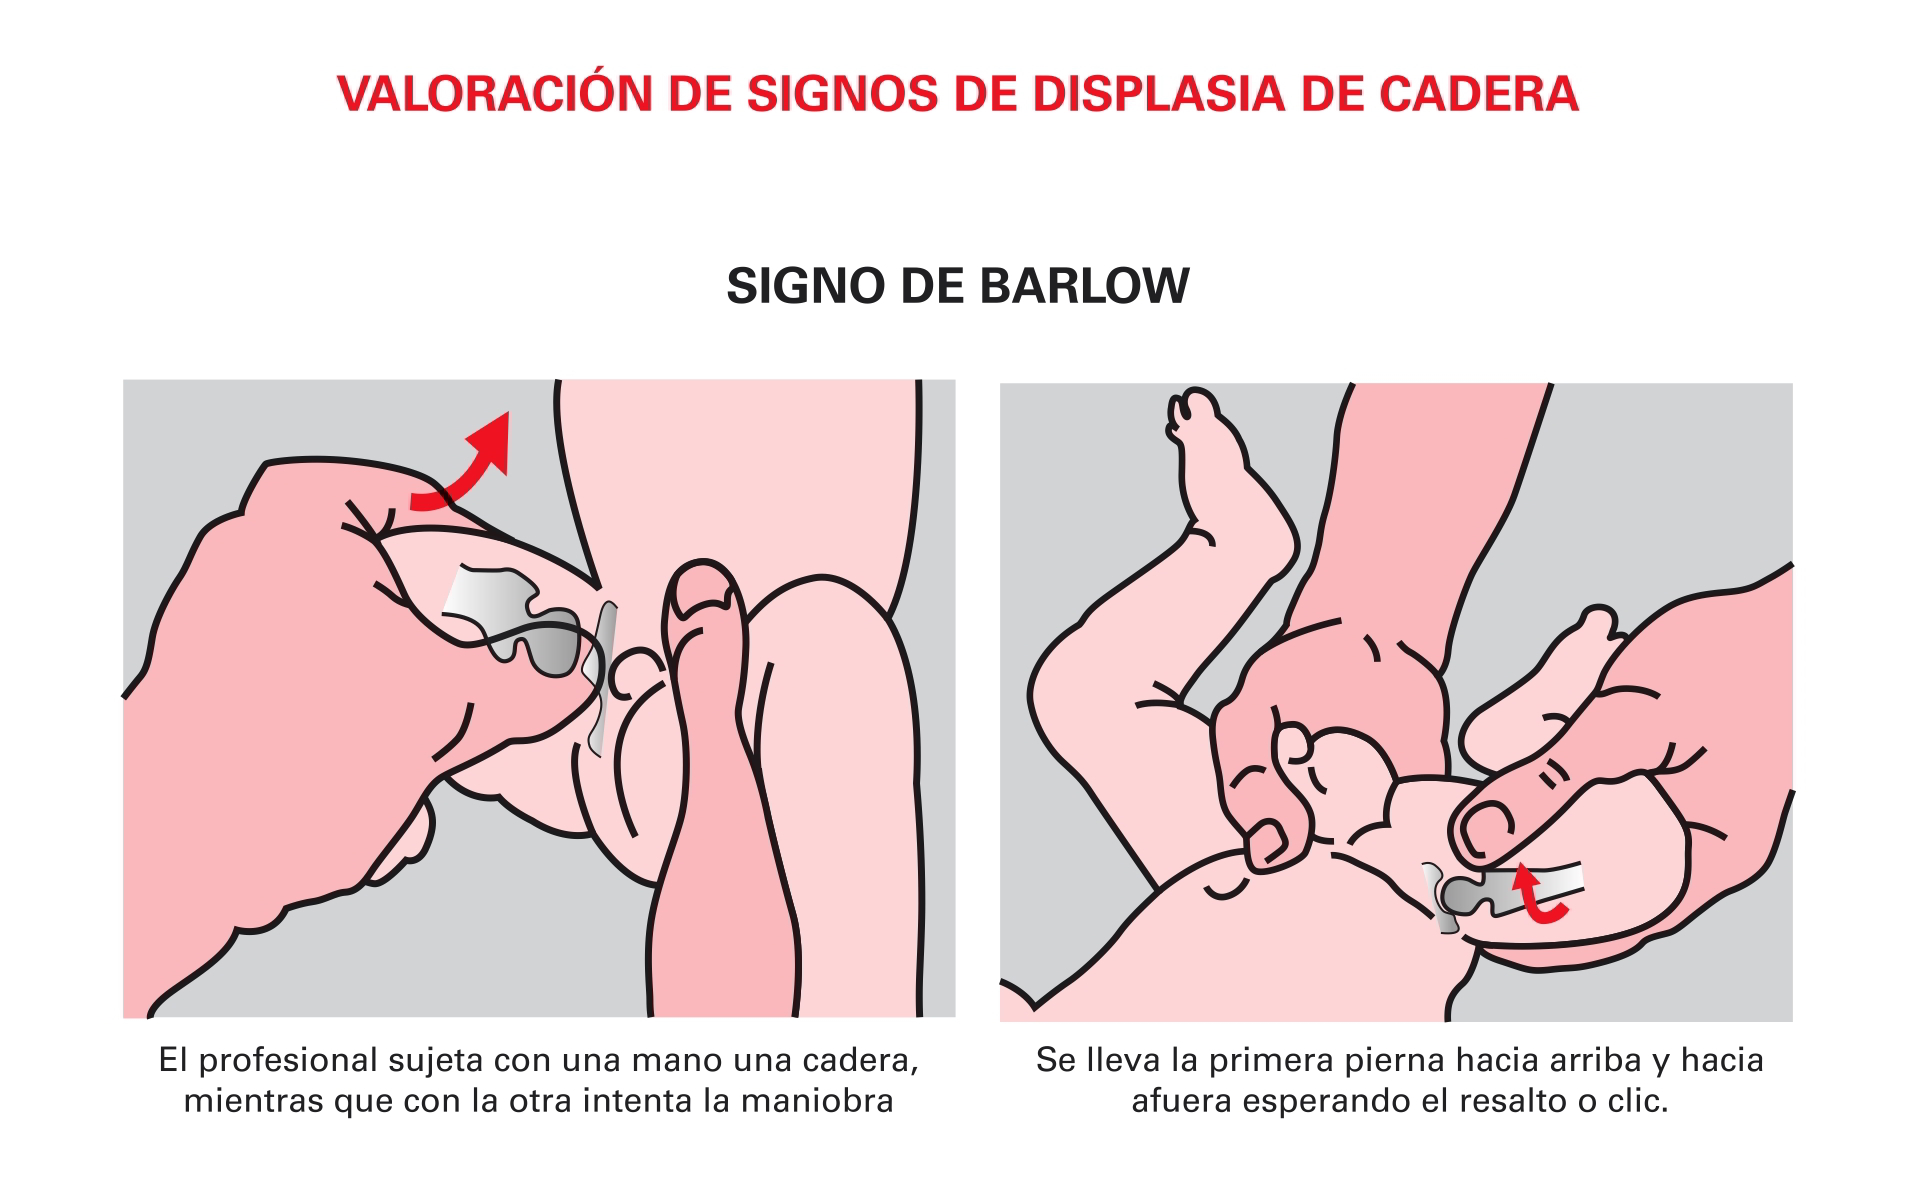 Signo De Displasia De Cadera - Signos De Displasia De Cadera , HD Wallpaper & Backgrounds